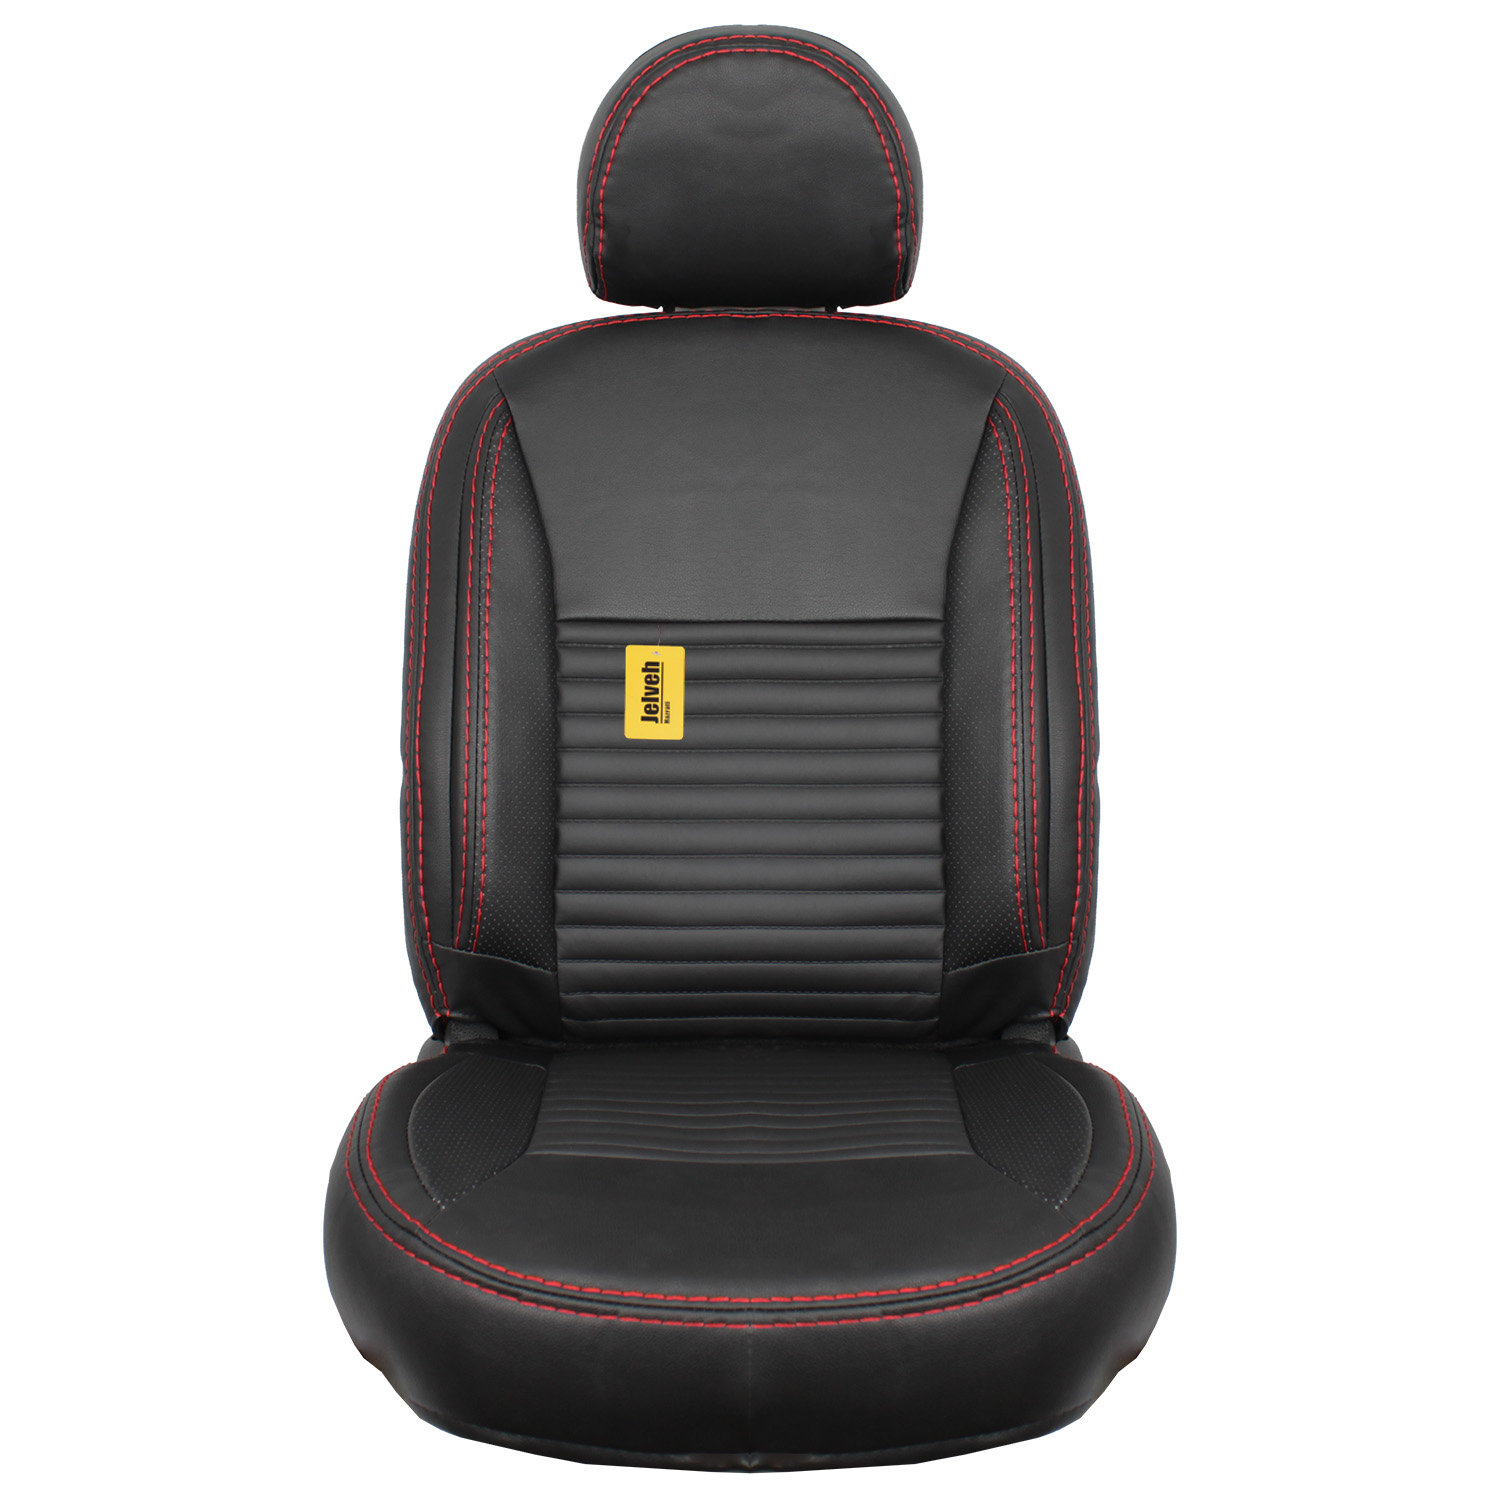 روکش صندلی خودرو جلوه مدل VIP12 مناسب برای کوییک